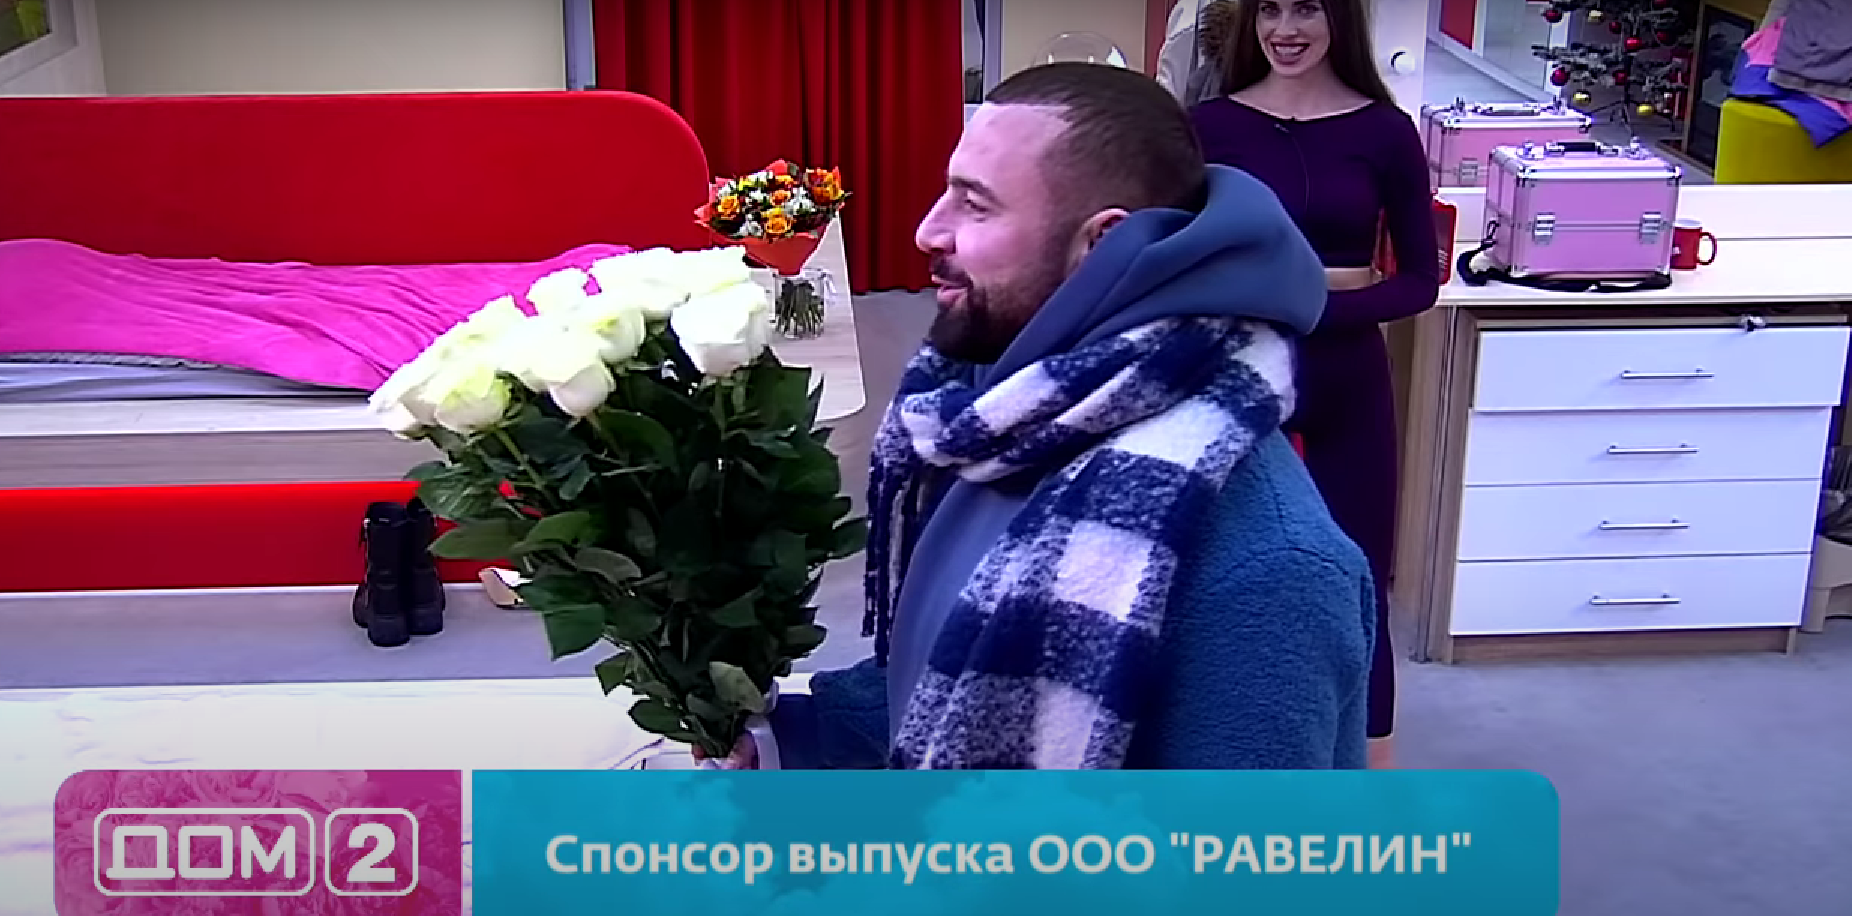 Адеев пригласил на Поляну Юлию Белую праздновать Новый год